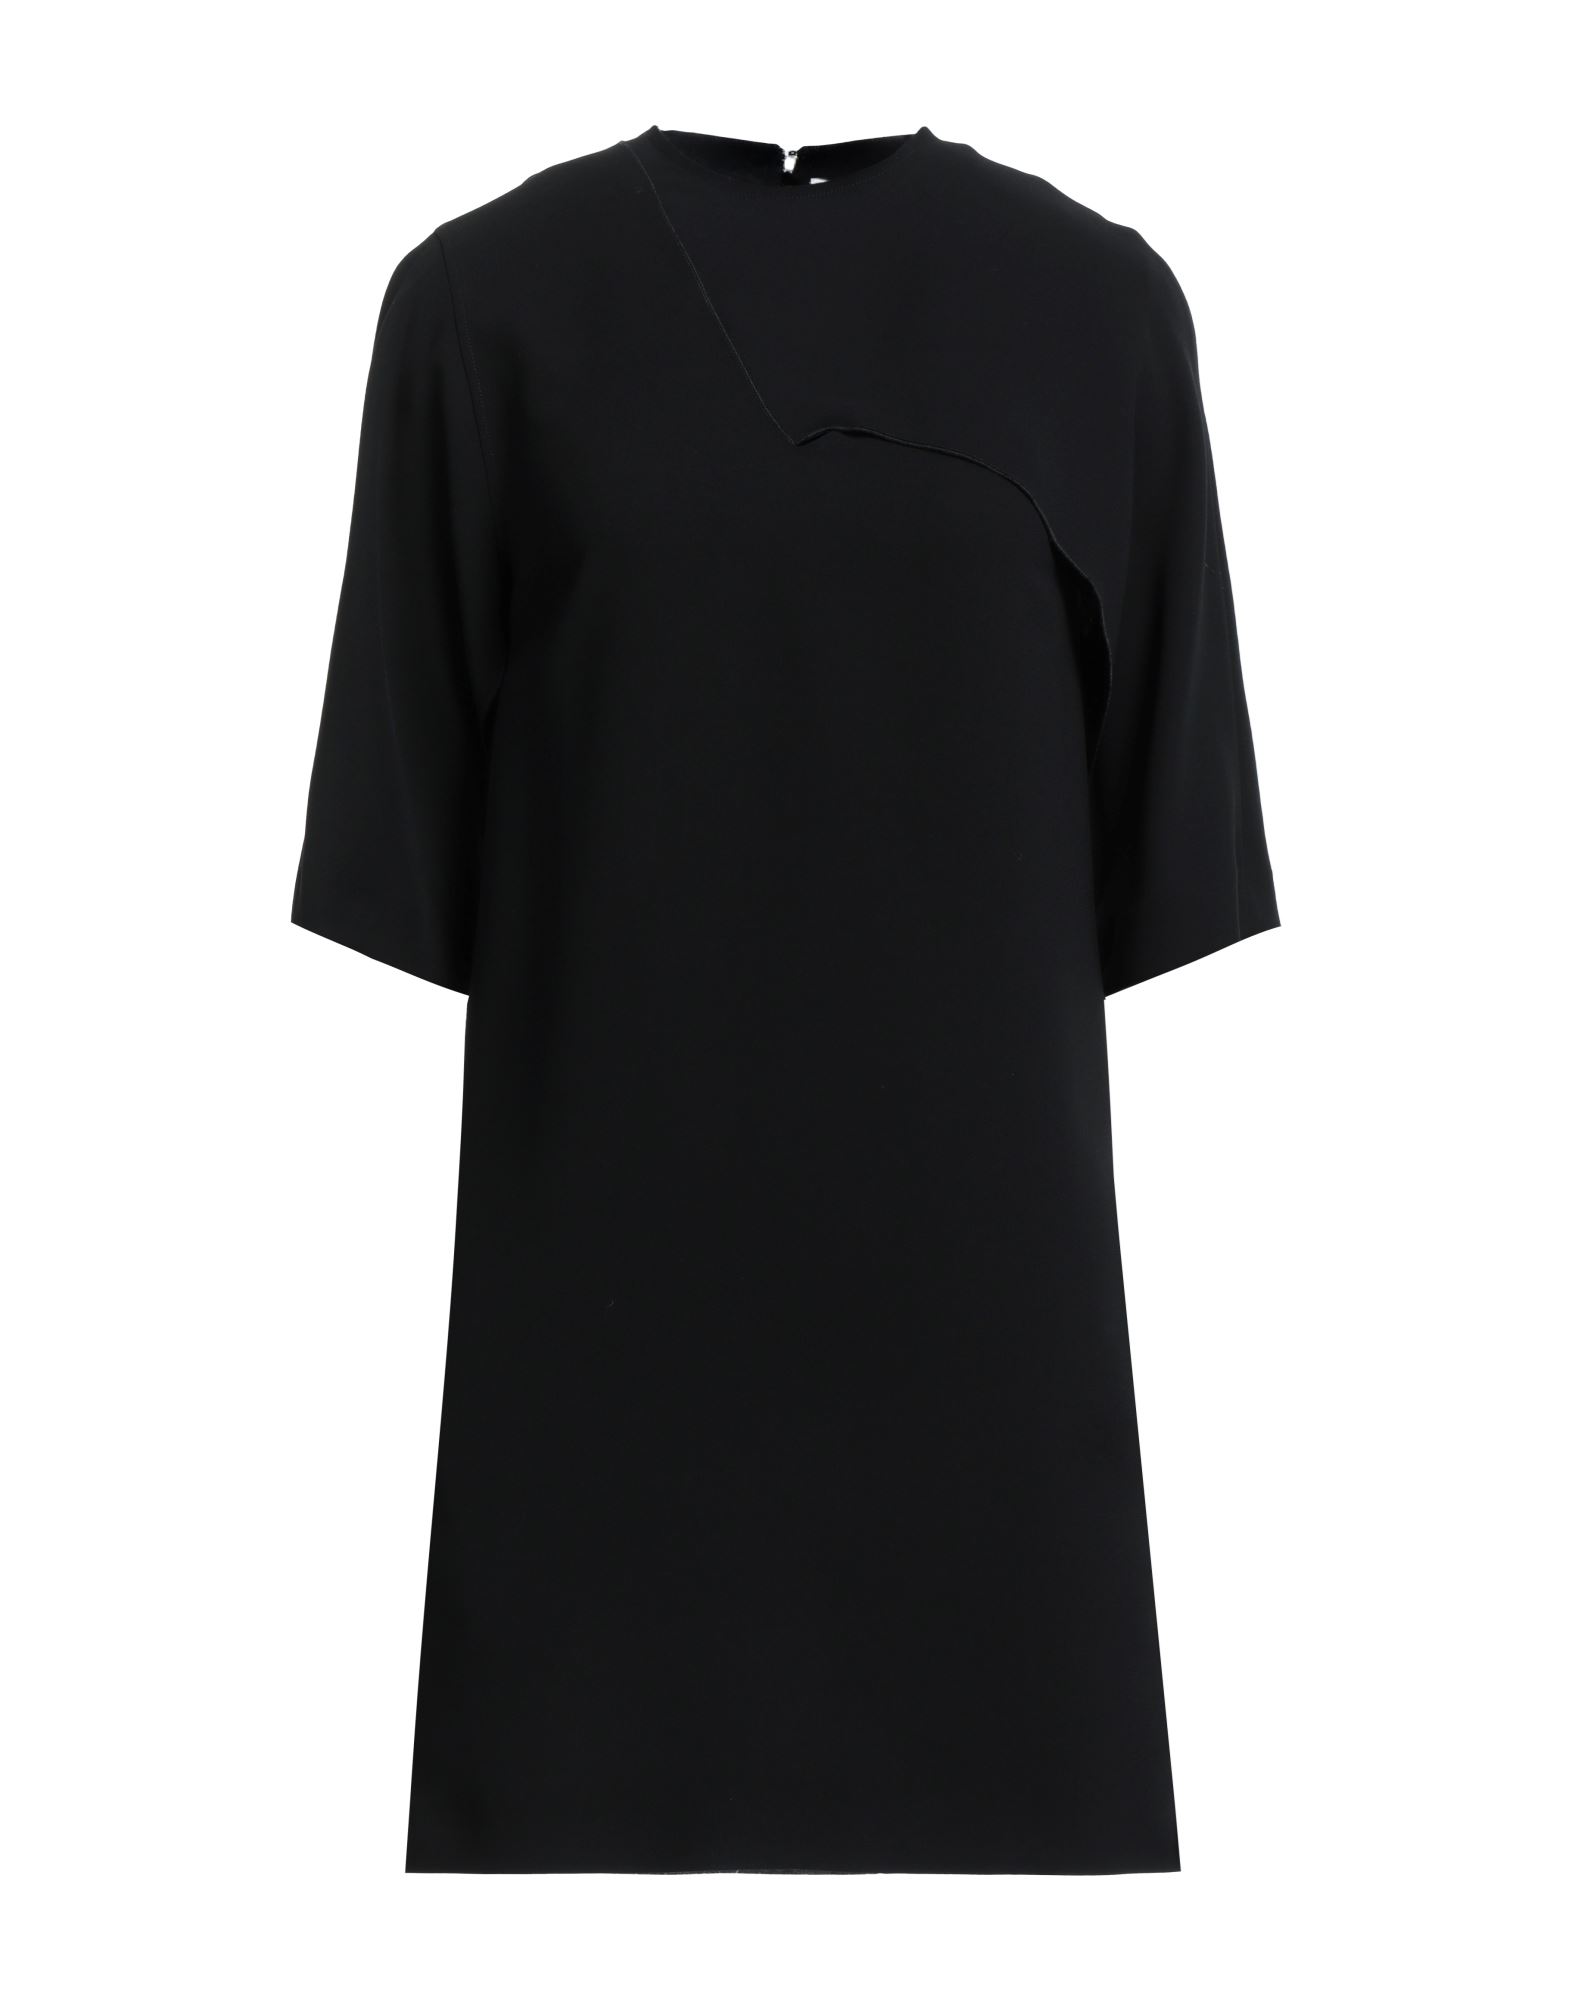 Victoria Victoria Beckham Victoria, Victoria Beckham Woman Mini Dress Black Size 2 Polyester